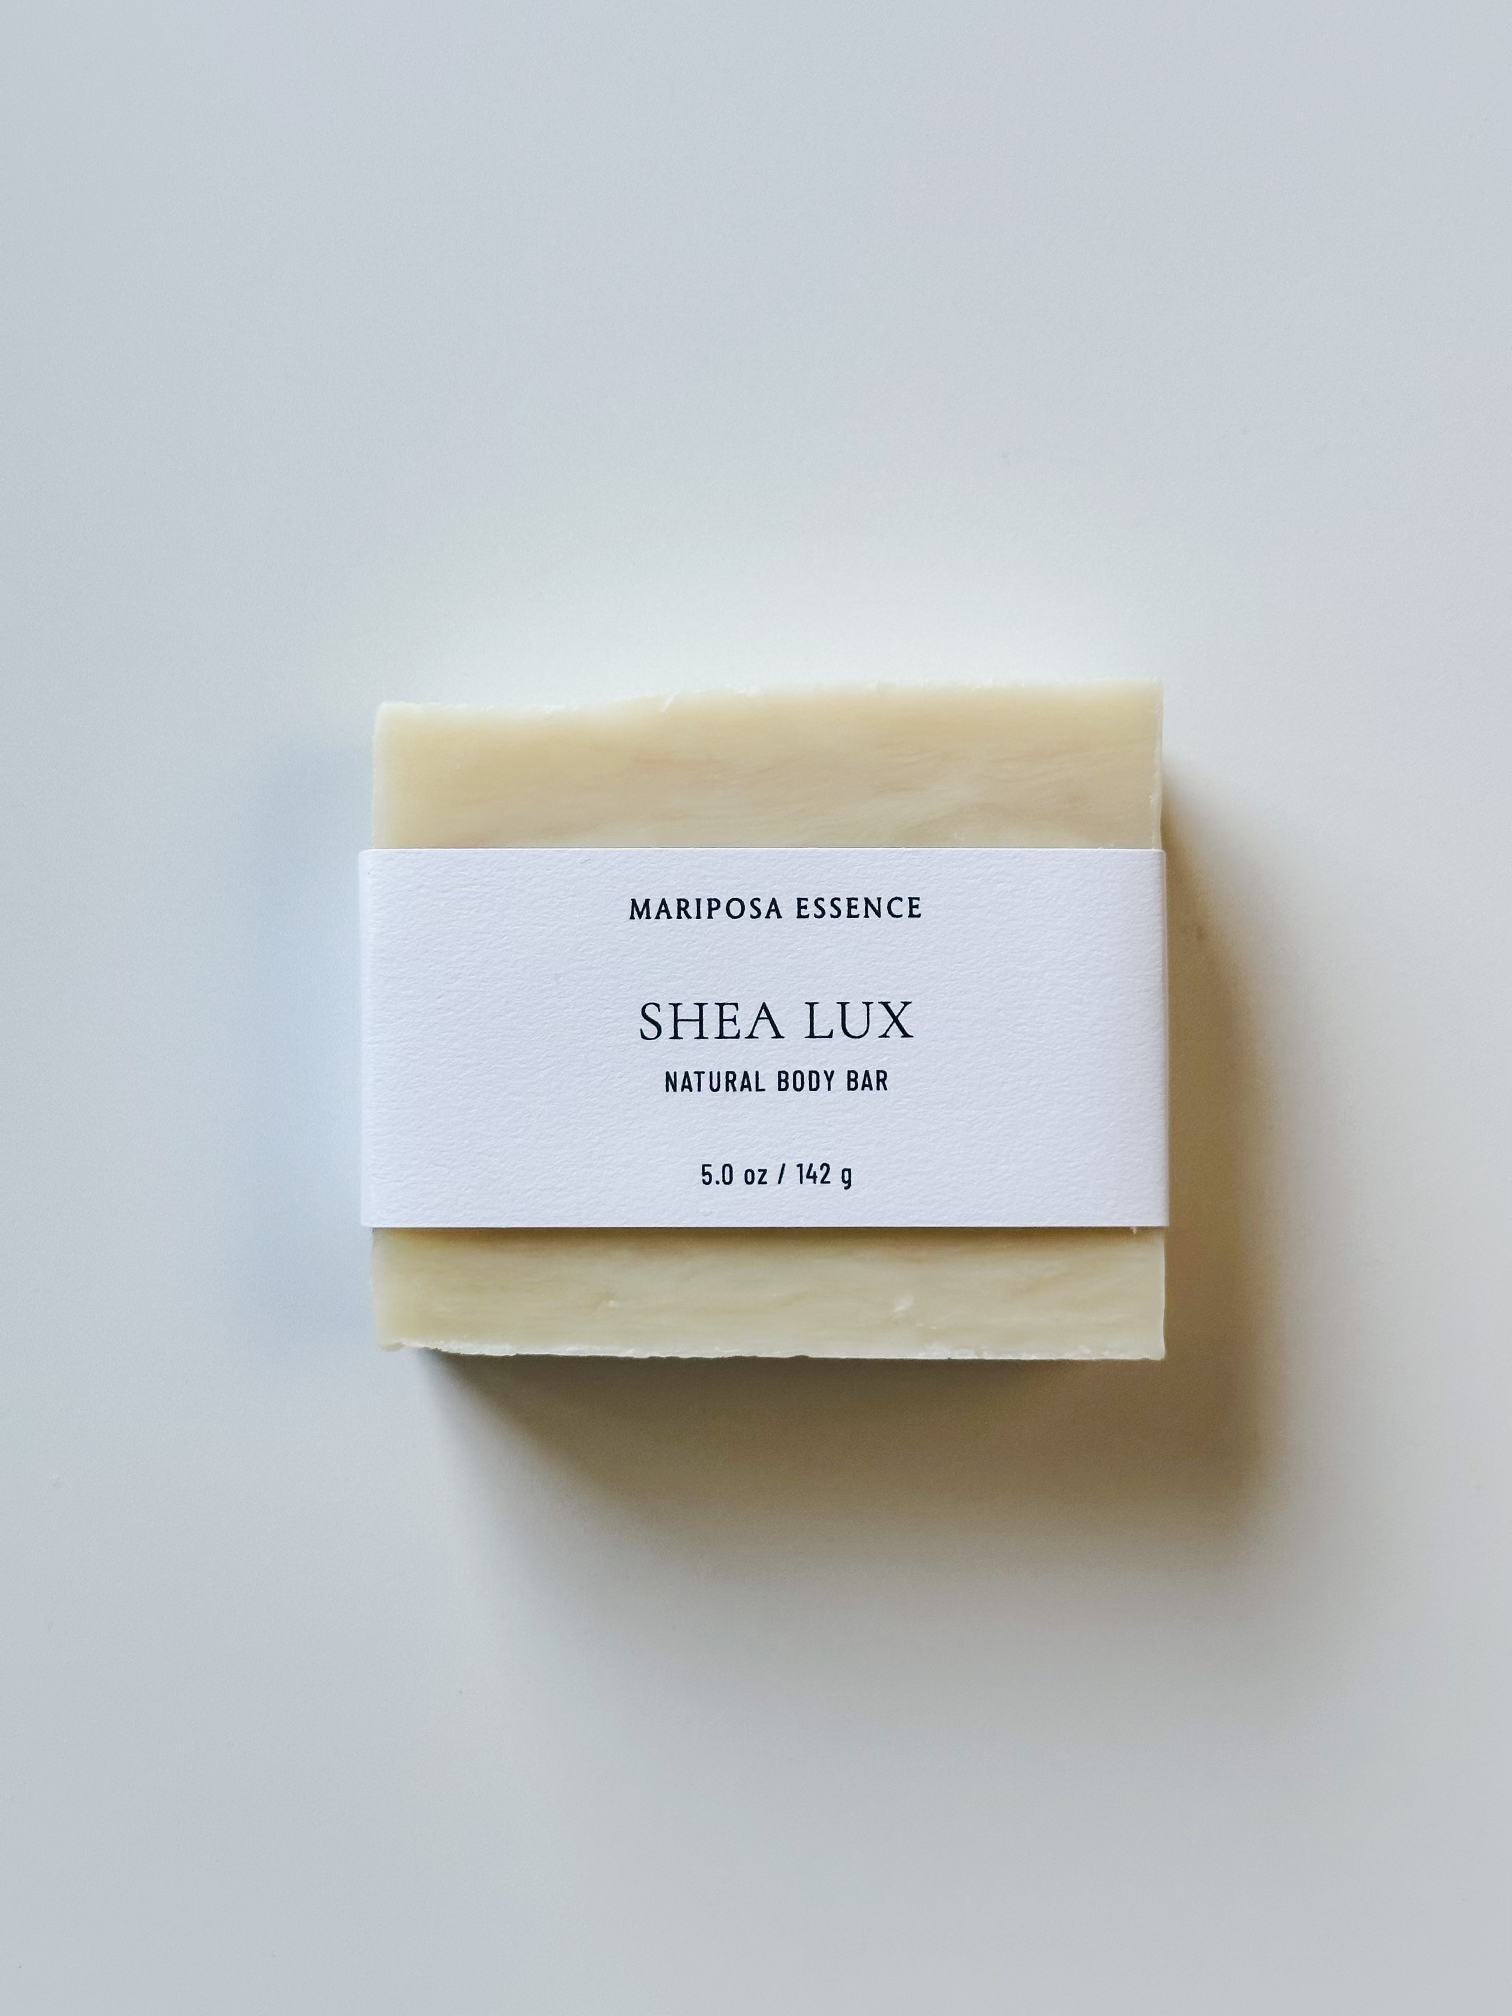 Shea Lux body bar